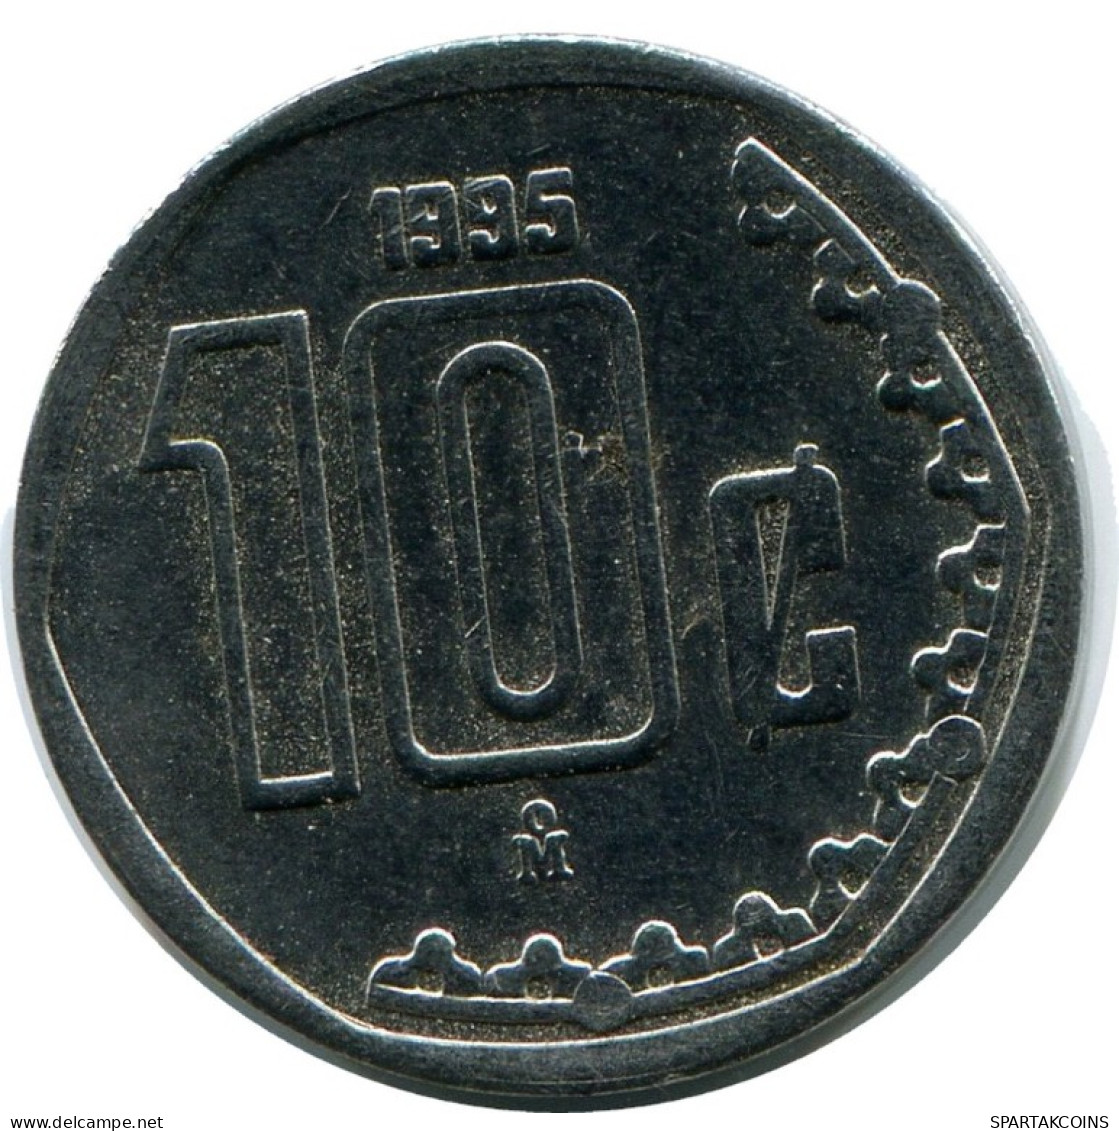 10 CENTAVOS 1995 MEXICO Coin #AH409.5.U.A - Mexico